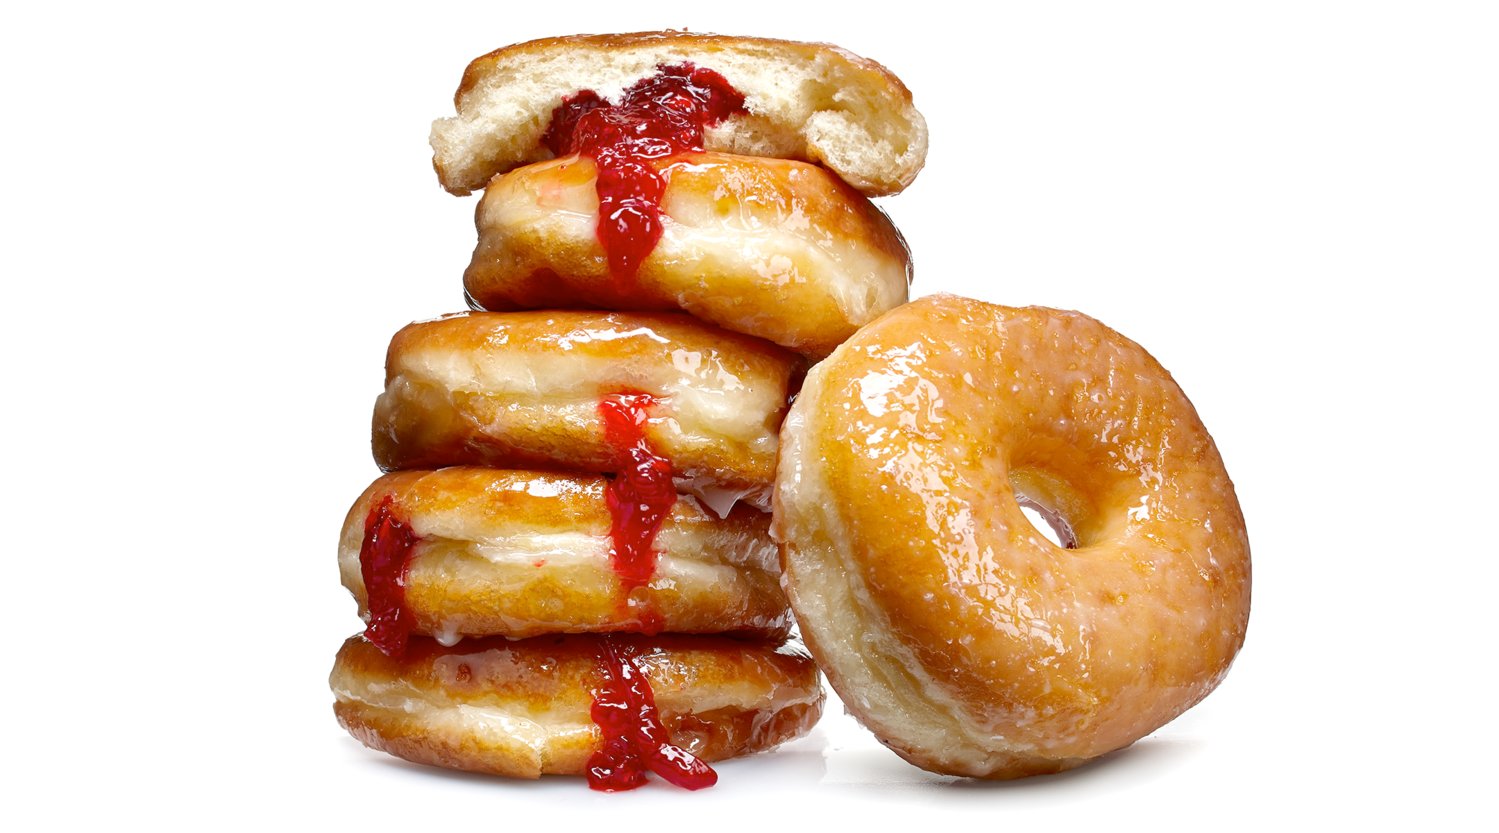 Jelly doughnuts are a tasty Hanukkah treat.